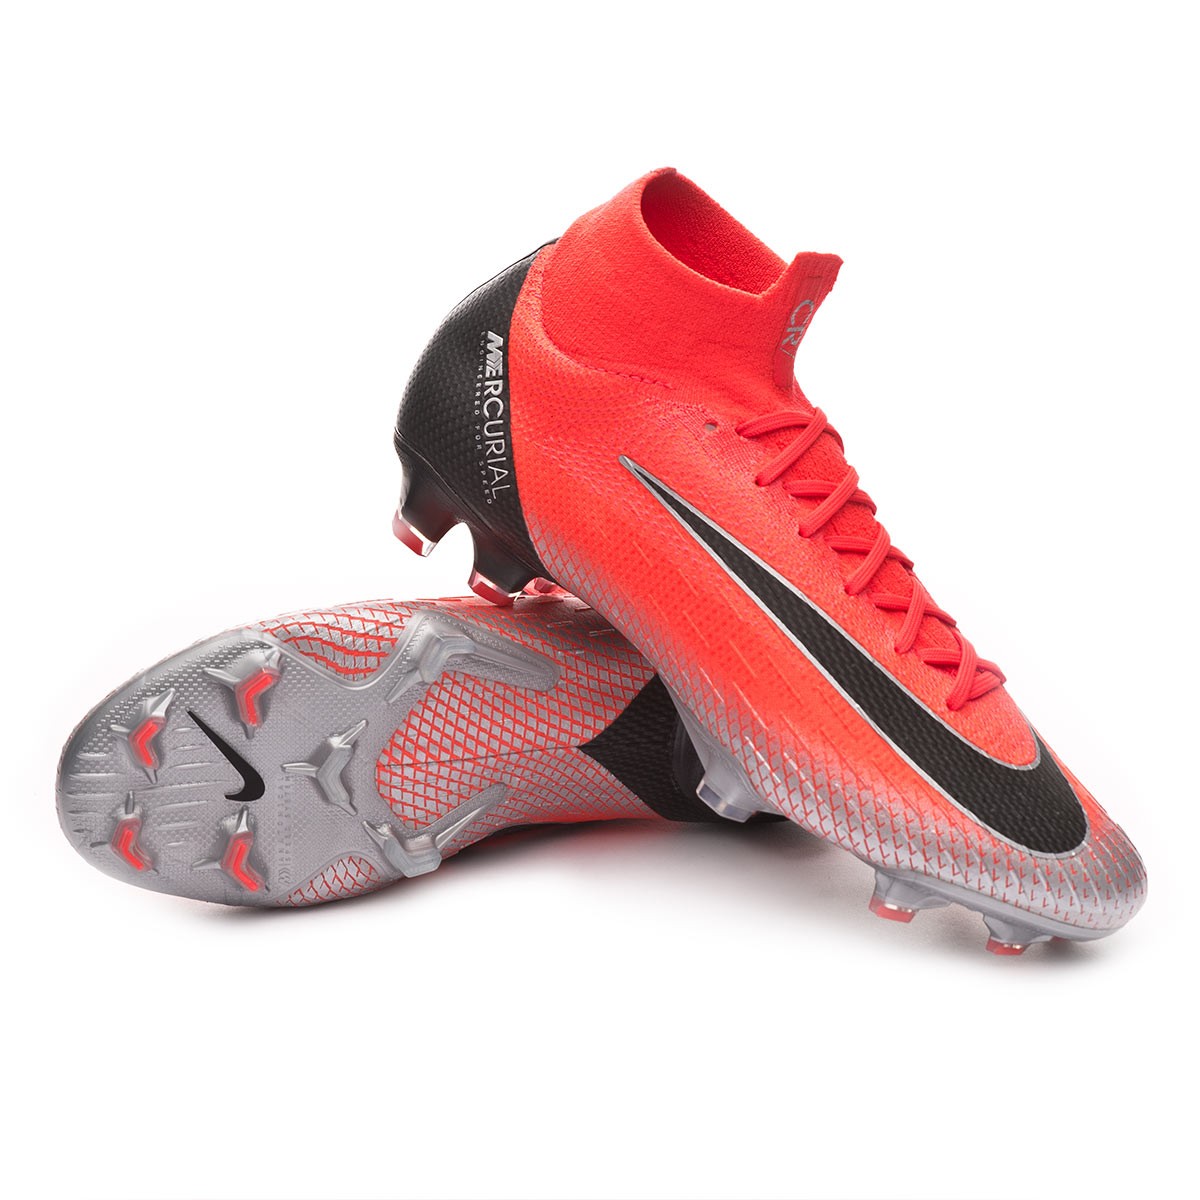 Bota de fútbol Nike Mercurial Superfly VI Elite CR7 FG Flash  crimson-Black-Total crimson - Tienda de fútbol Fútbol Emotion